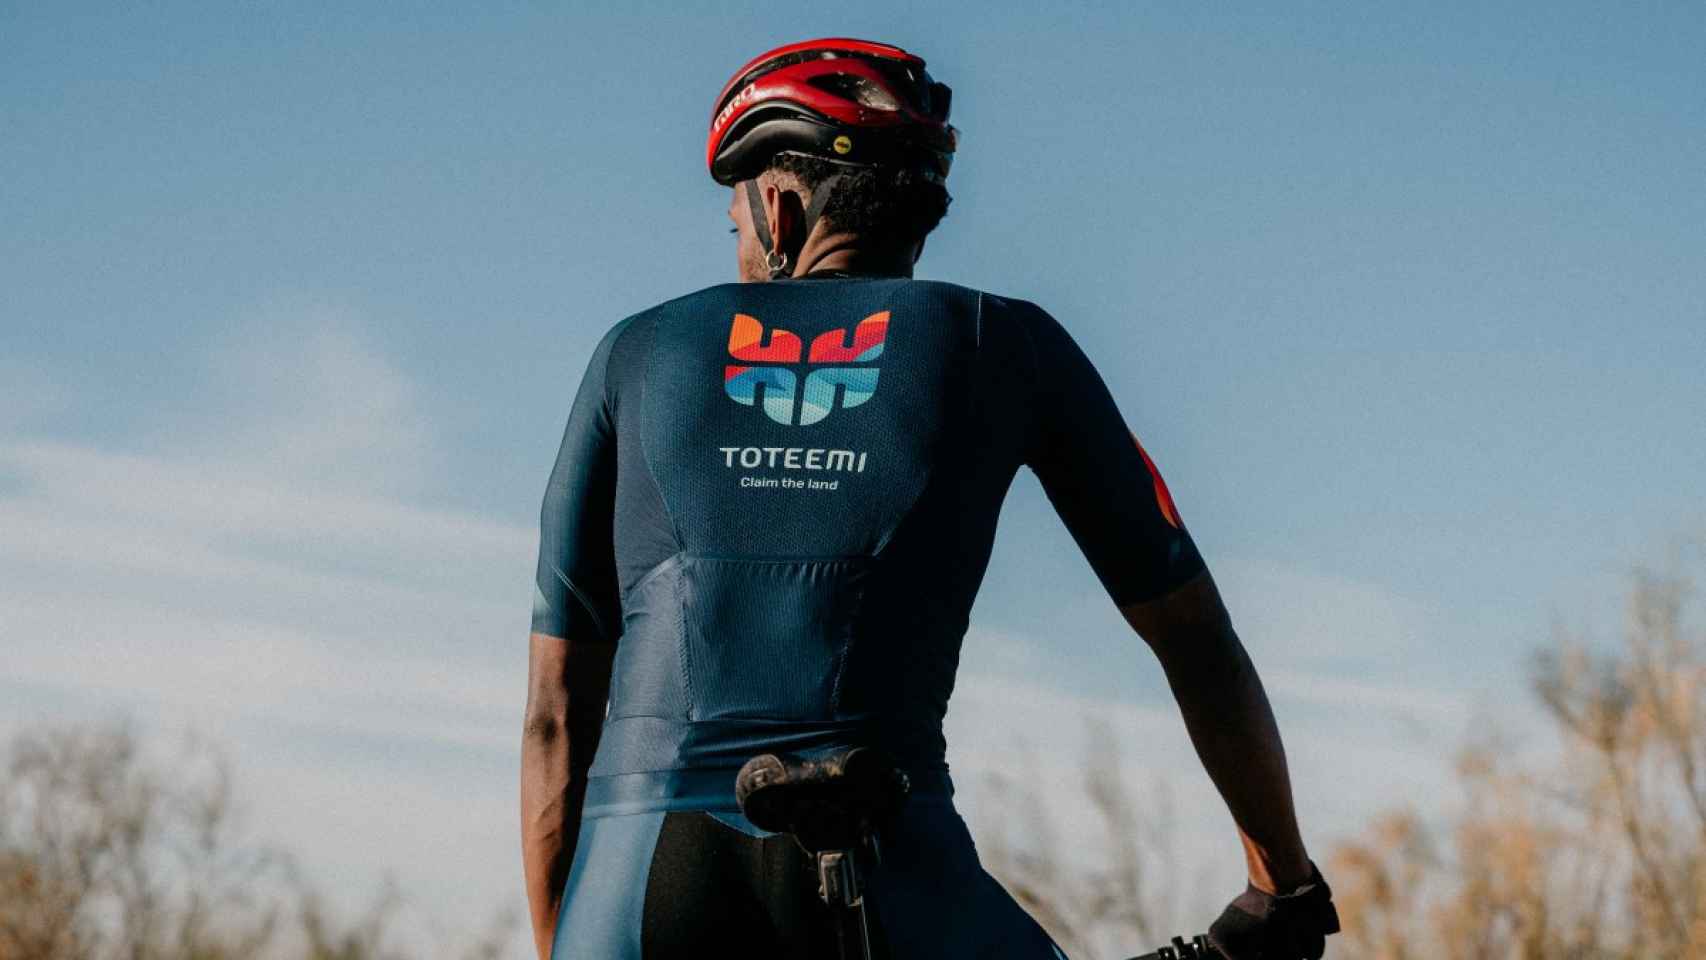 El ciclismo de carretera y de montaña, está entre los deportes de la comunidad Toteemi.